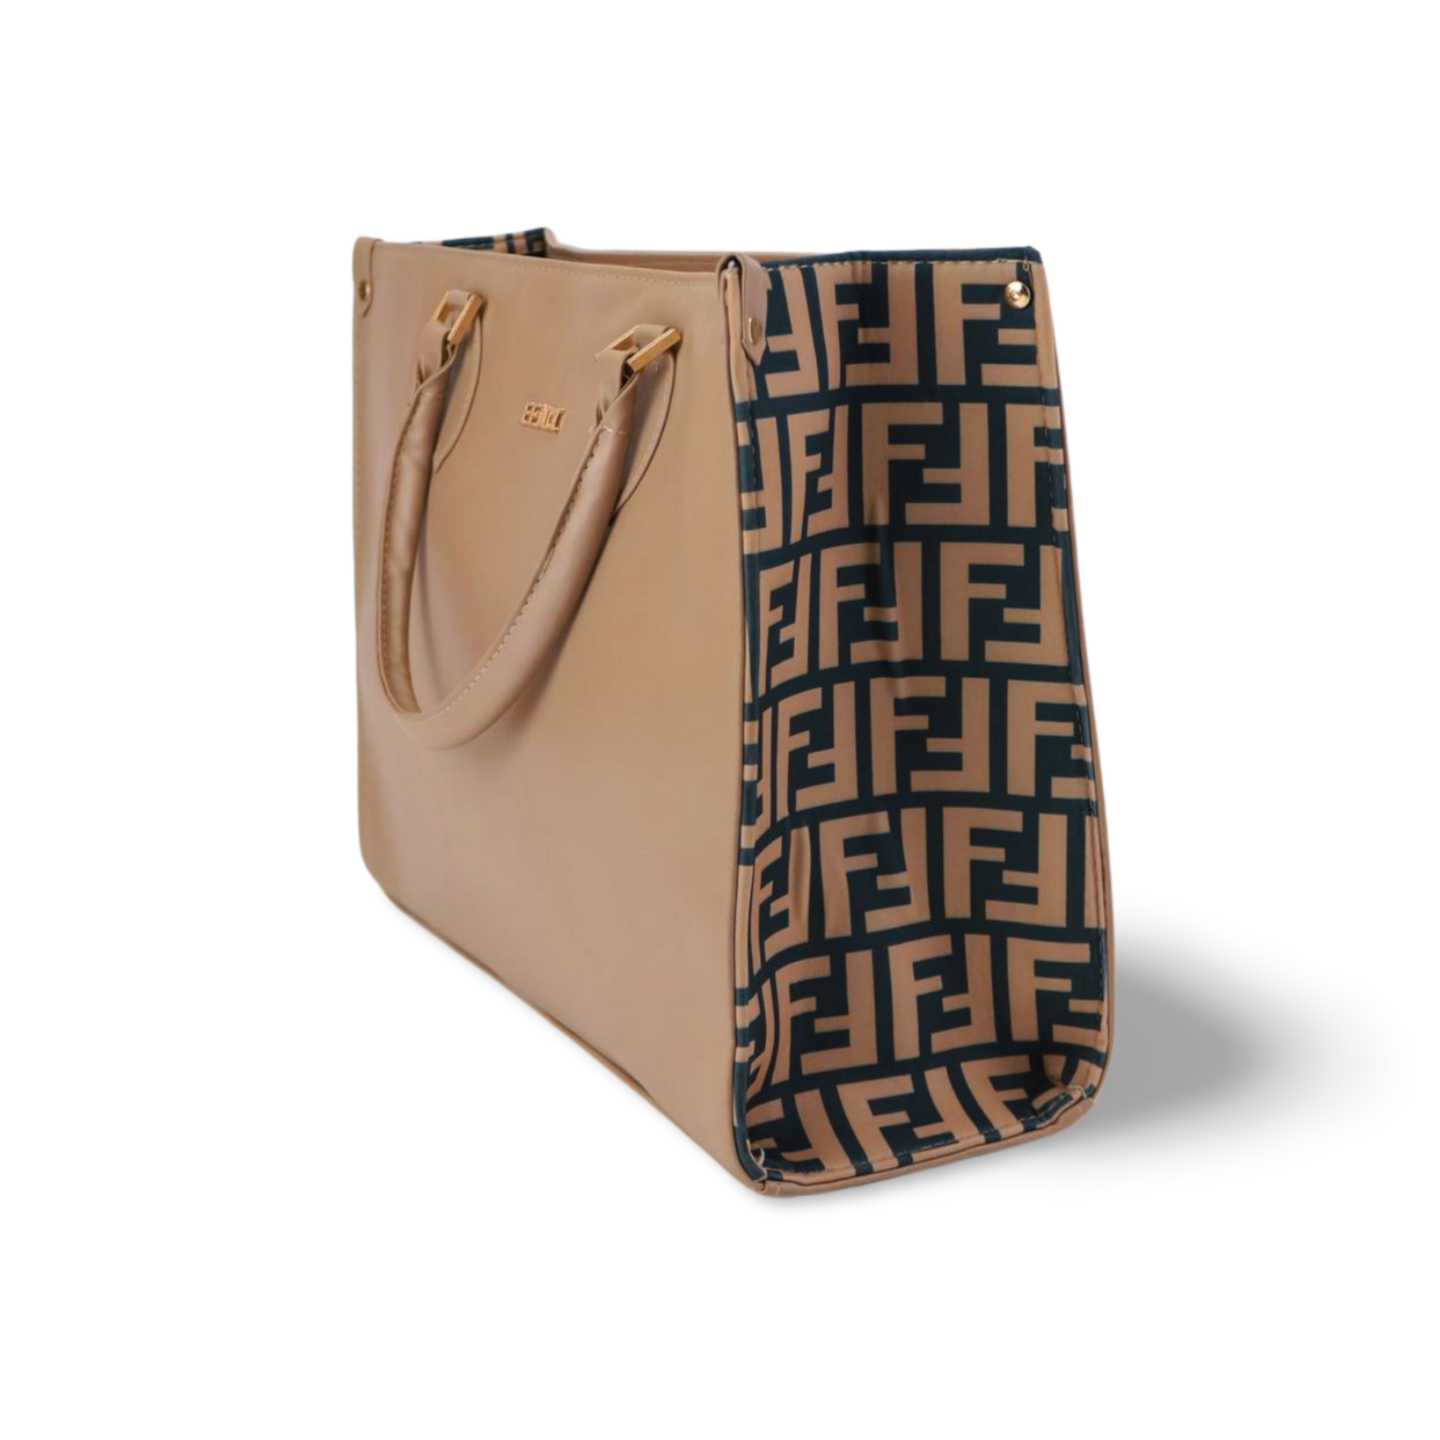 Stylish Women's Tote Bag - Designer Handbag for Women